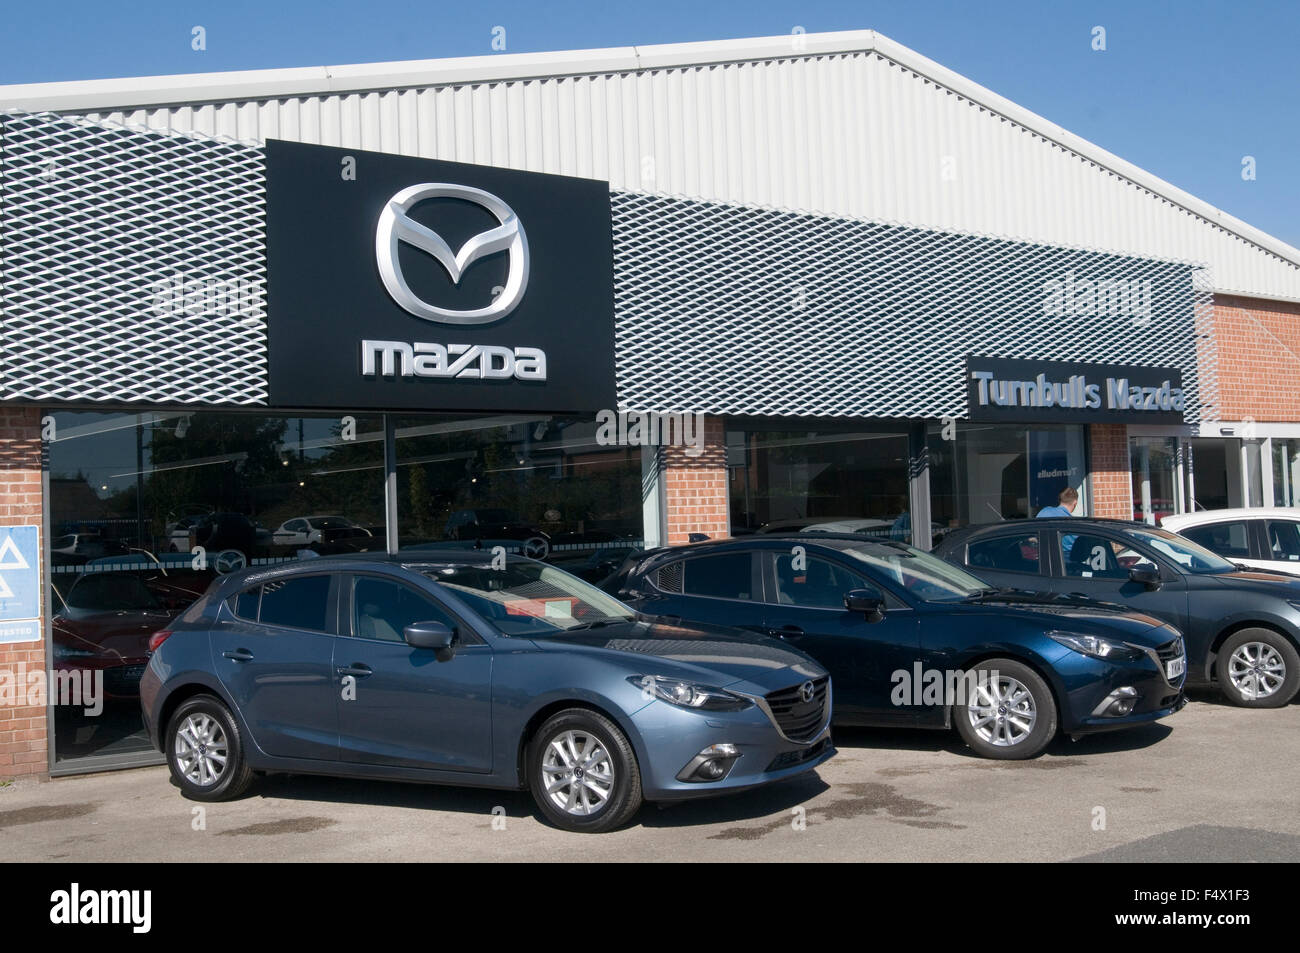 mazda dealership garage dealership dealerships franchised car cars Japanese manufacturer manufacturers maker Stock Photo